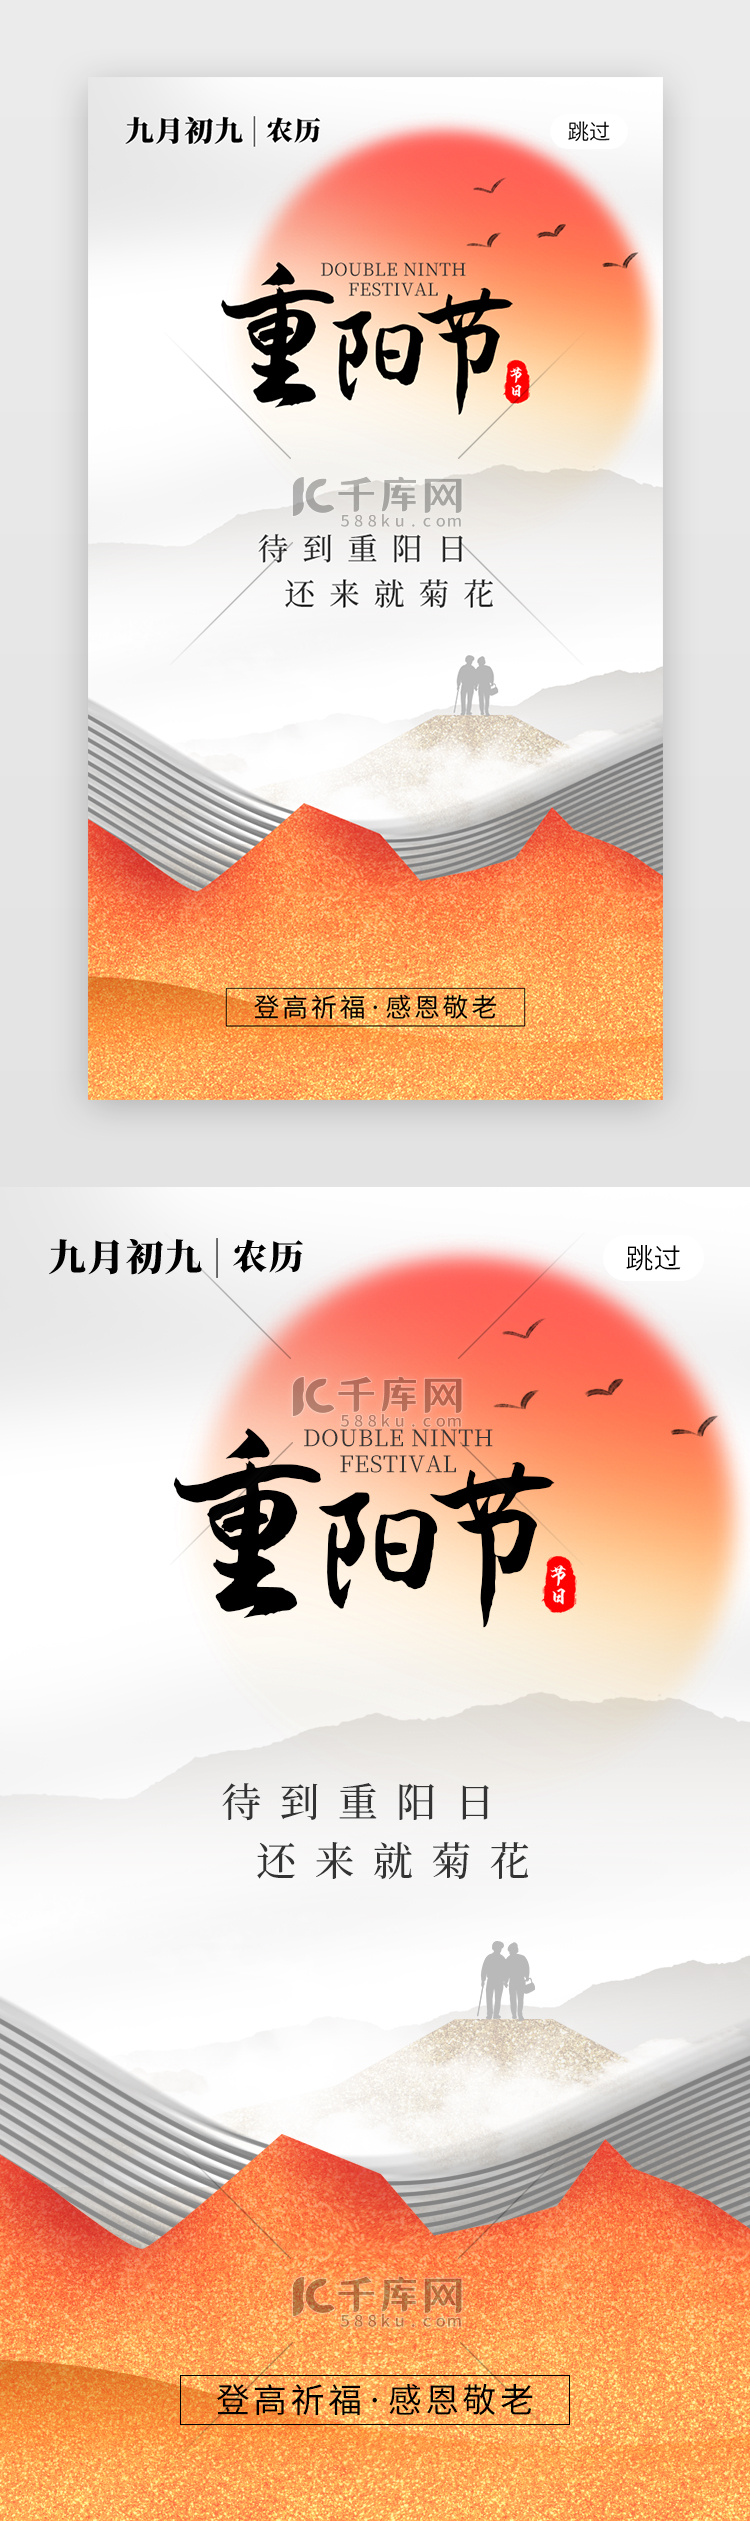 九九重阳节app闪屏创意橙红色太阳